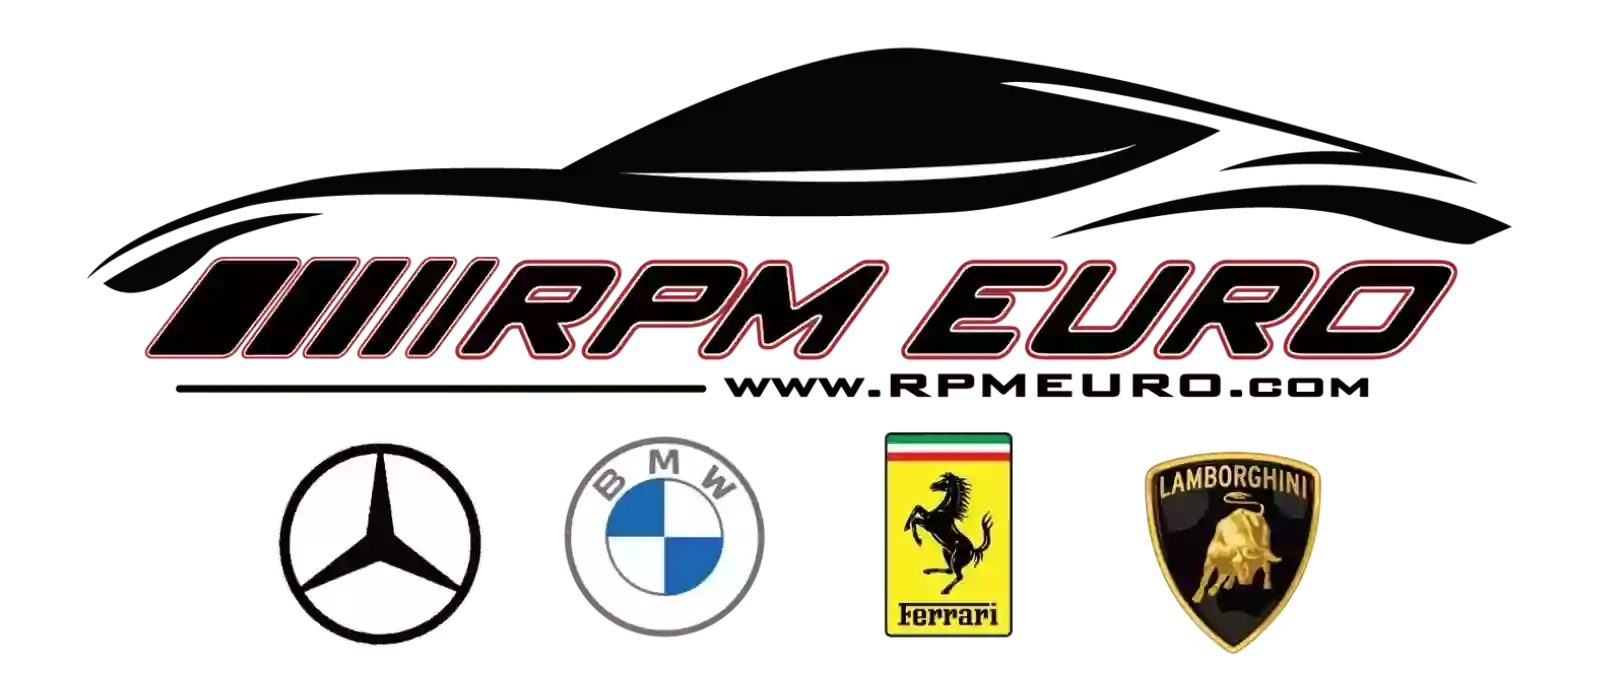 RPM Euro